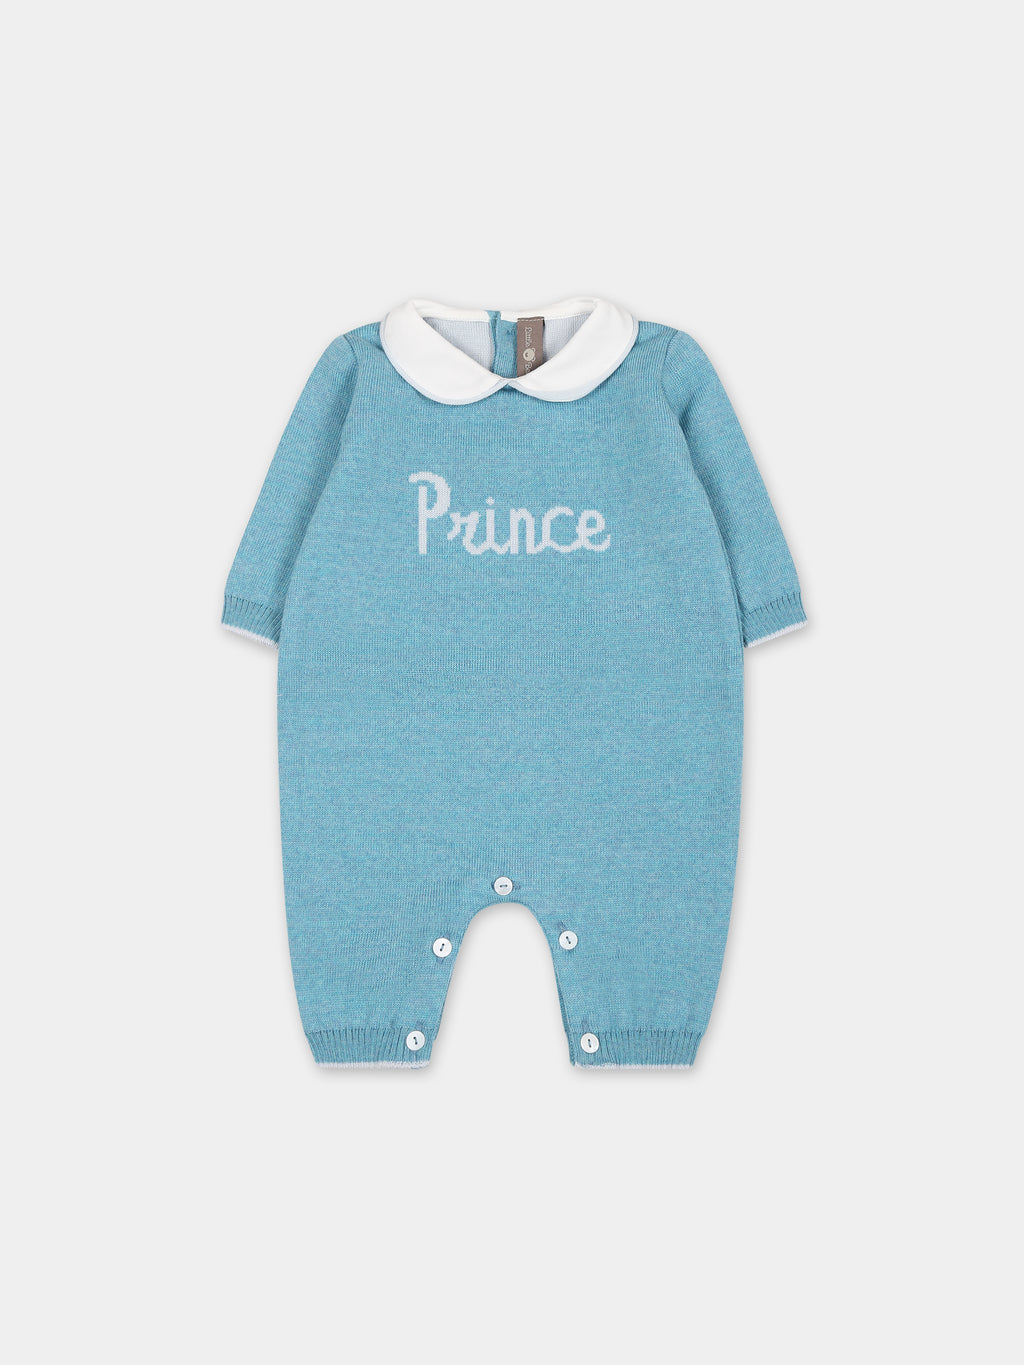 Tutina azzurra per neonato con ricamo scritta  Prince 